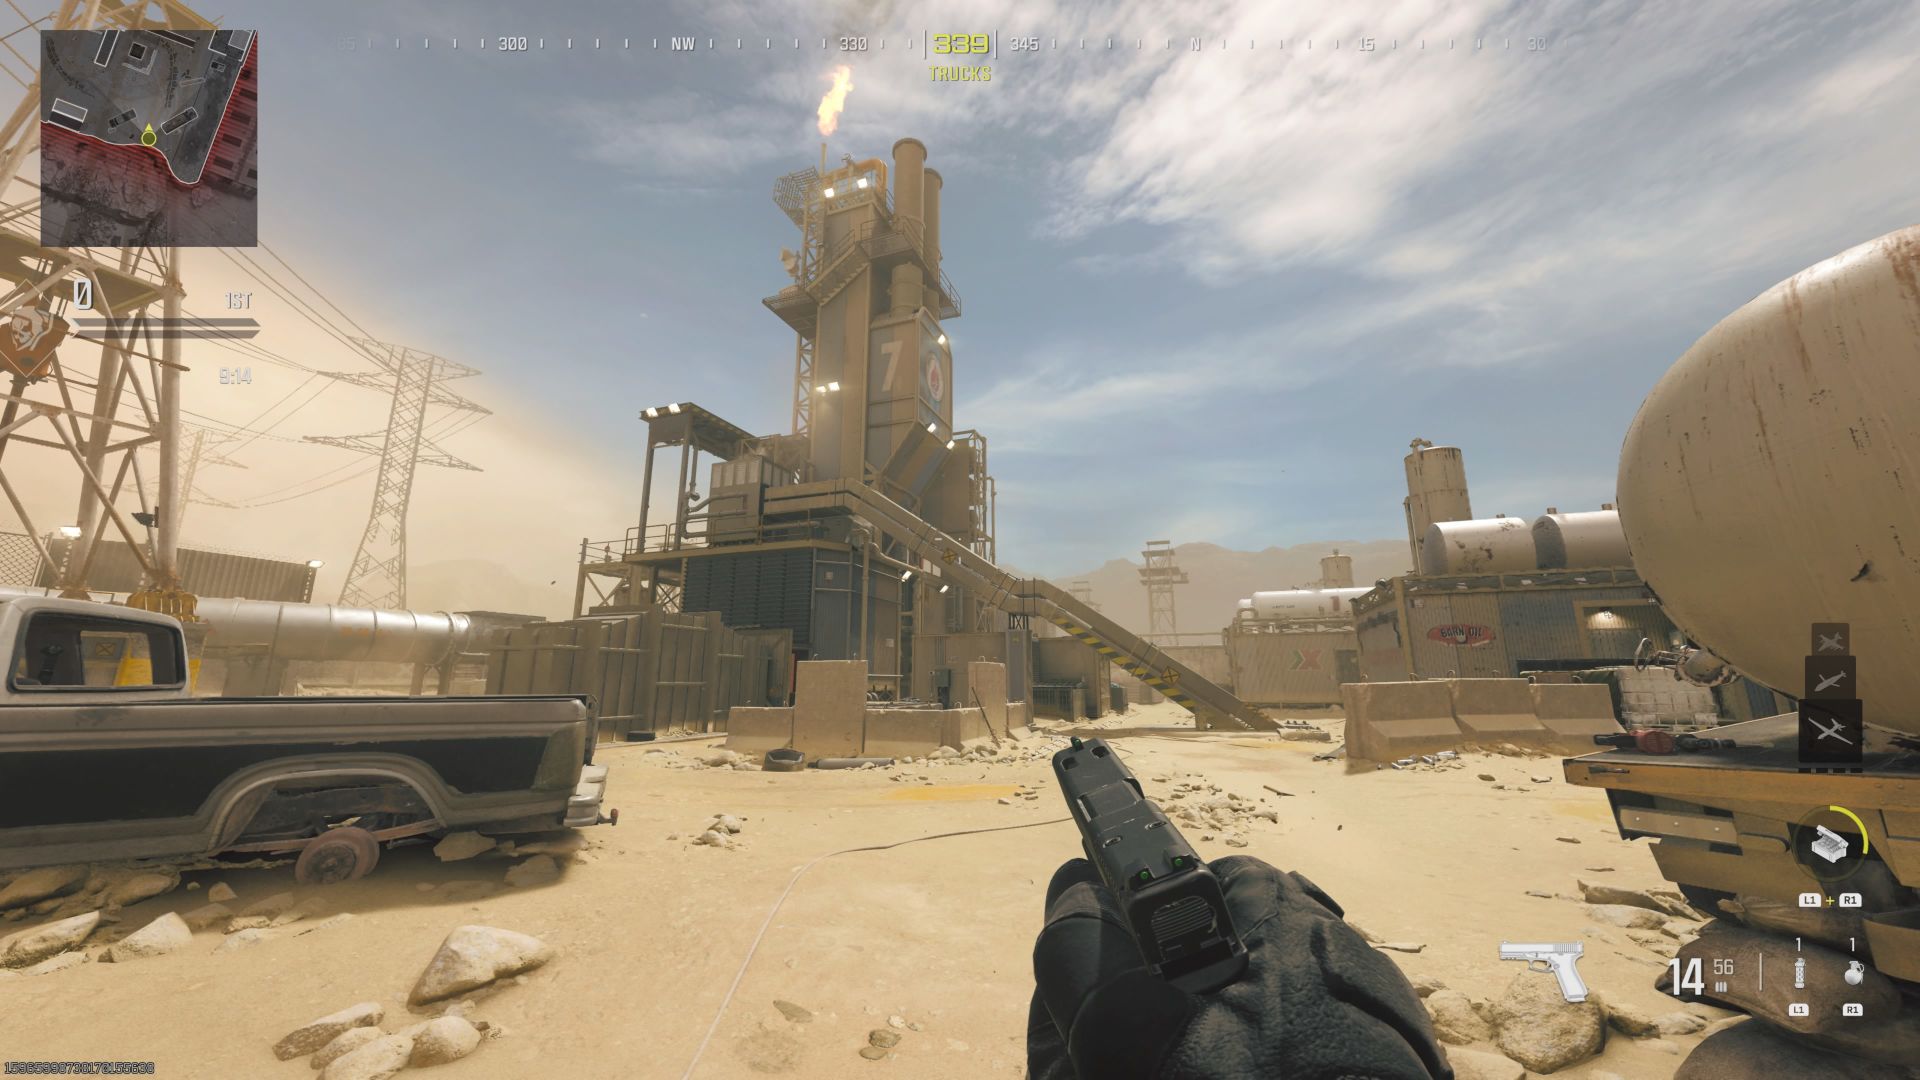 Screenshot von der MW3-Multiplayer-Karte Rust zeigt die kleine Wüstenarena mit einem großen Ölförderer in der Mitte, von dessen Spitze Feuer ausbricht.